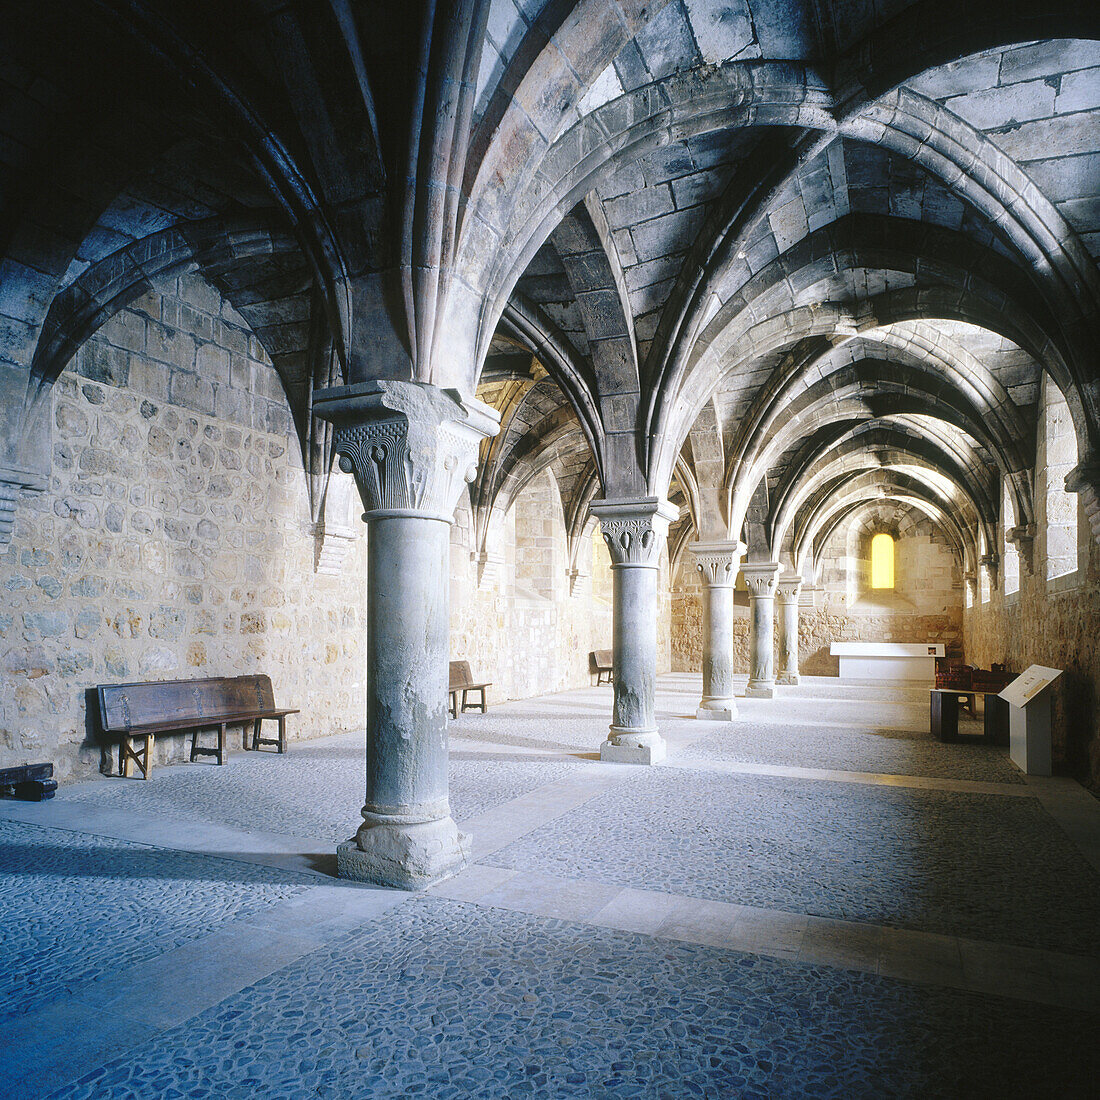 Room in the monastery of Santa Maria de Huerta. Soria province, Castilla-León, Spain